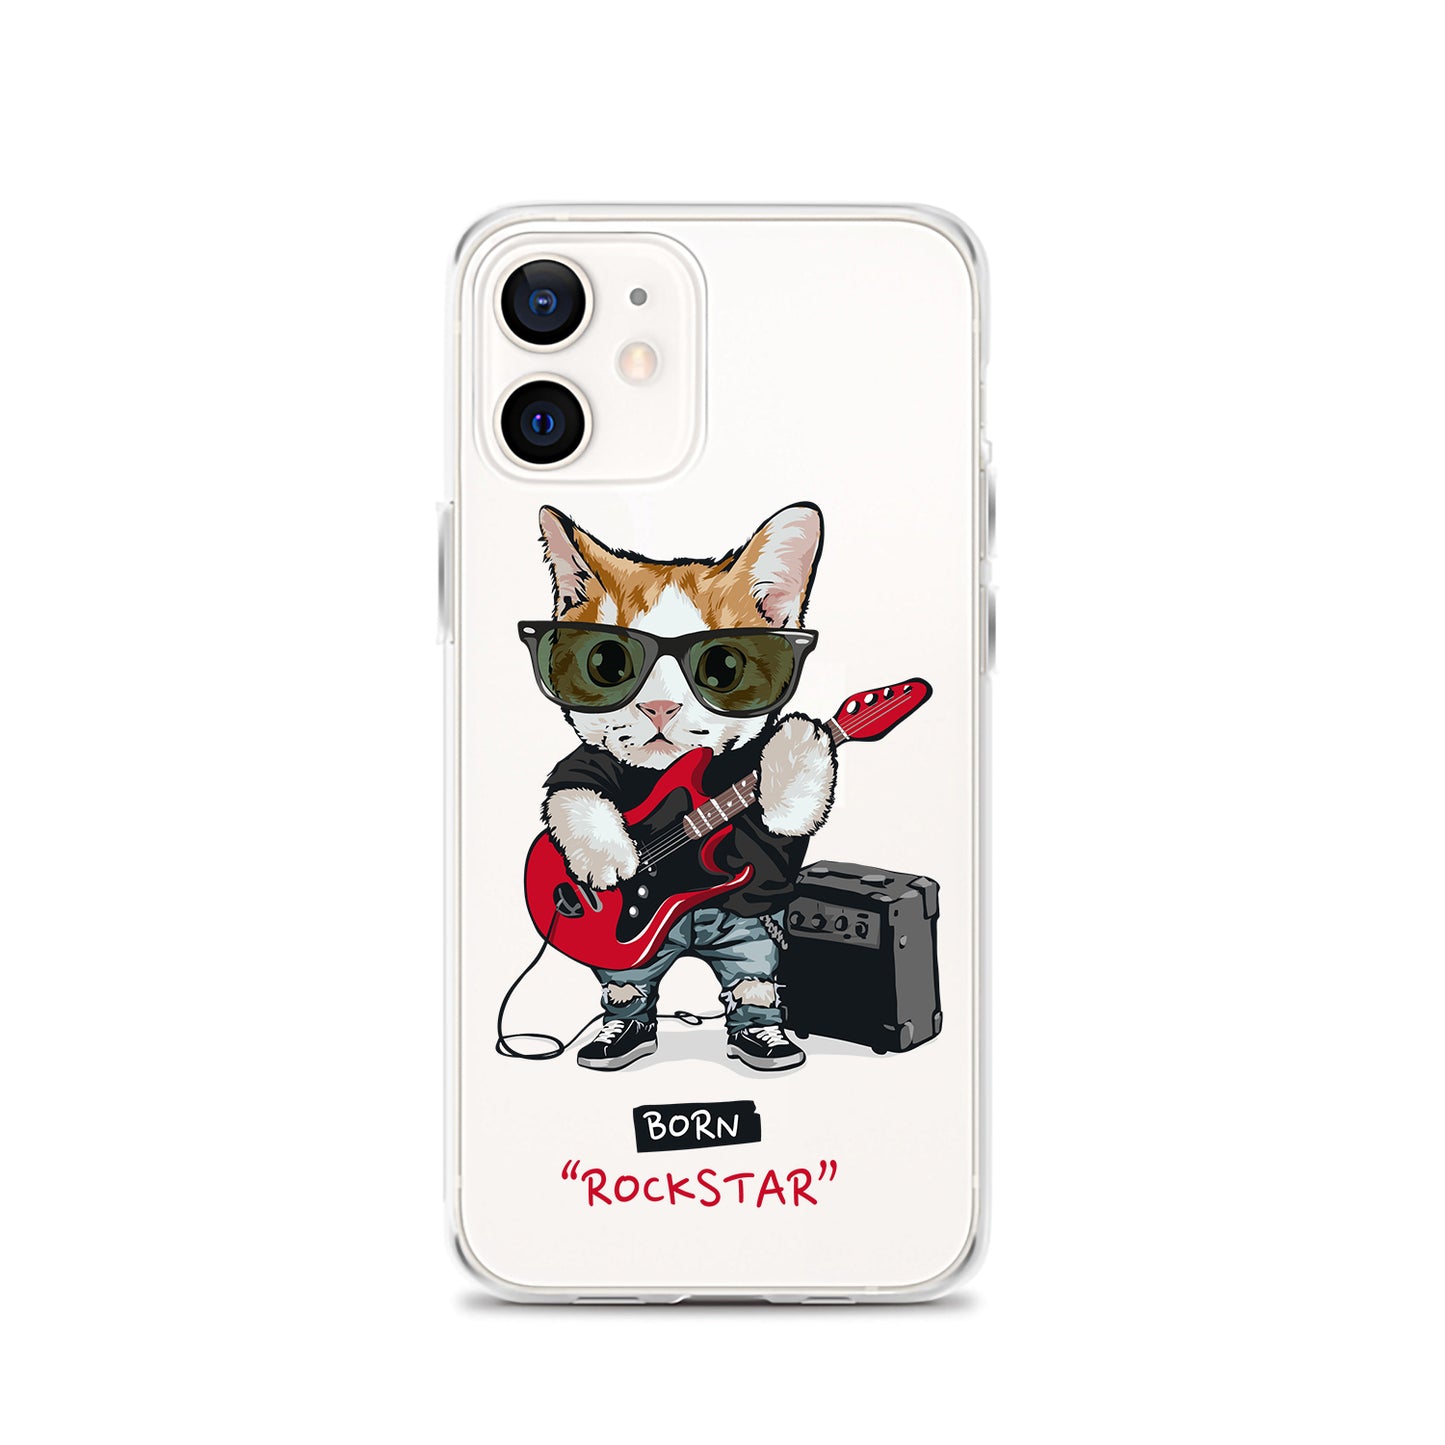 Born Rockstar iPhone Case, Clear Cat iPhone Case